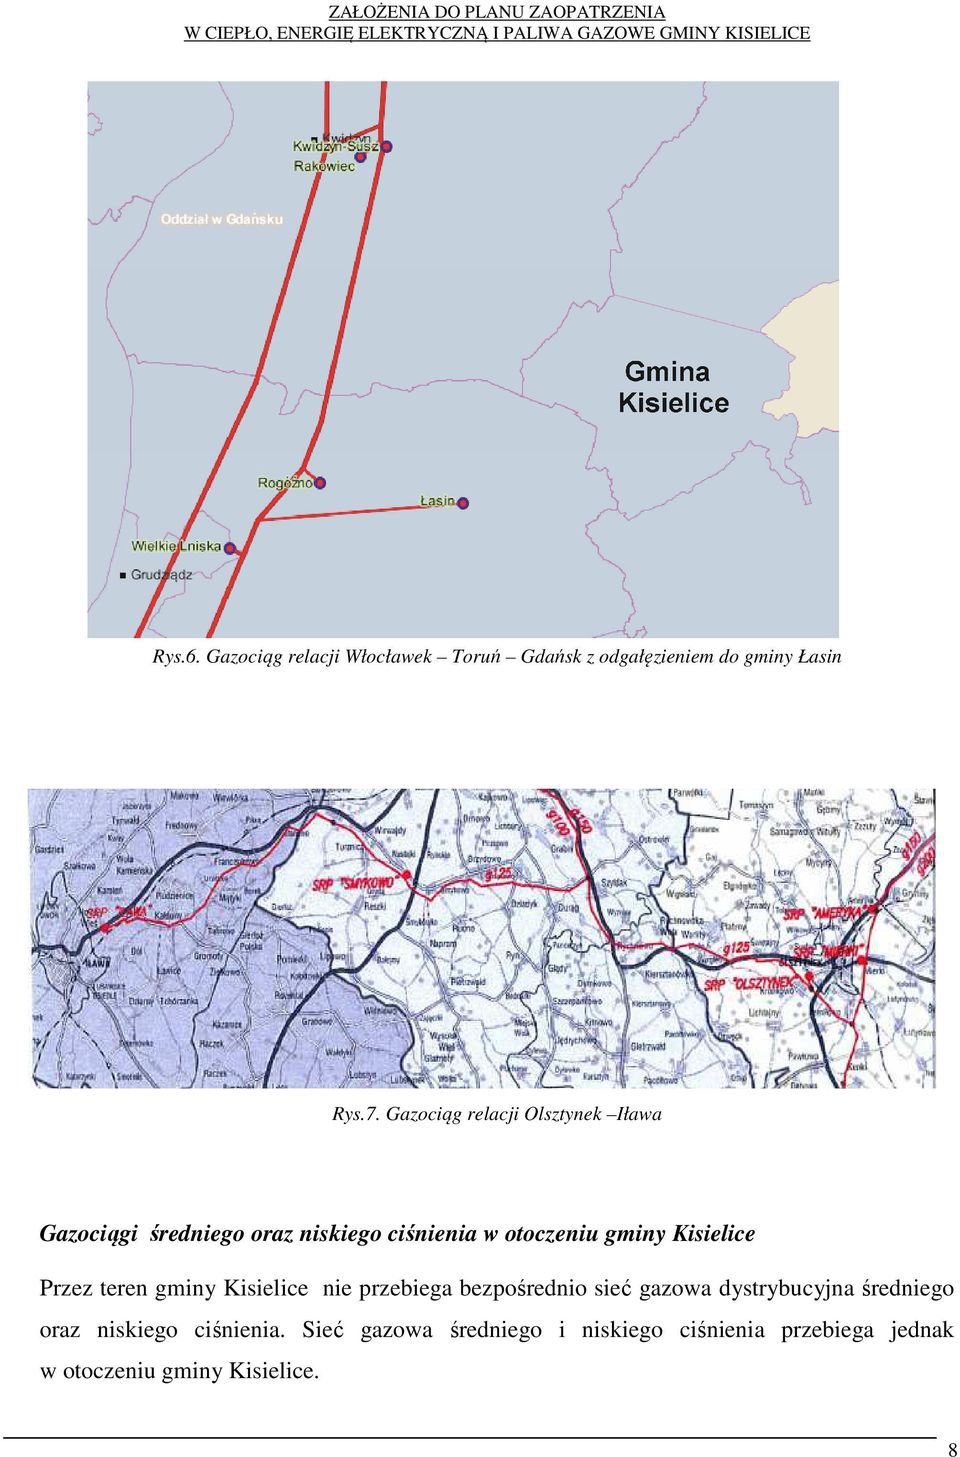 Kisielice Przez teren gminy Kisielice nie przebiega bezpośrednio sieć gazowa dystrybucyjna